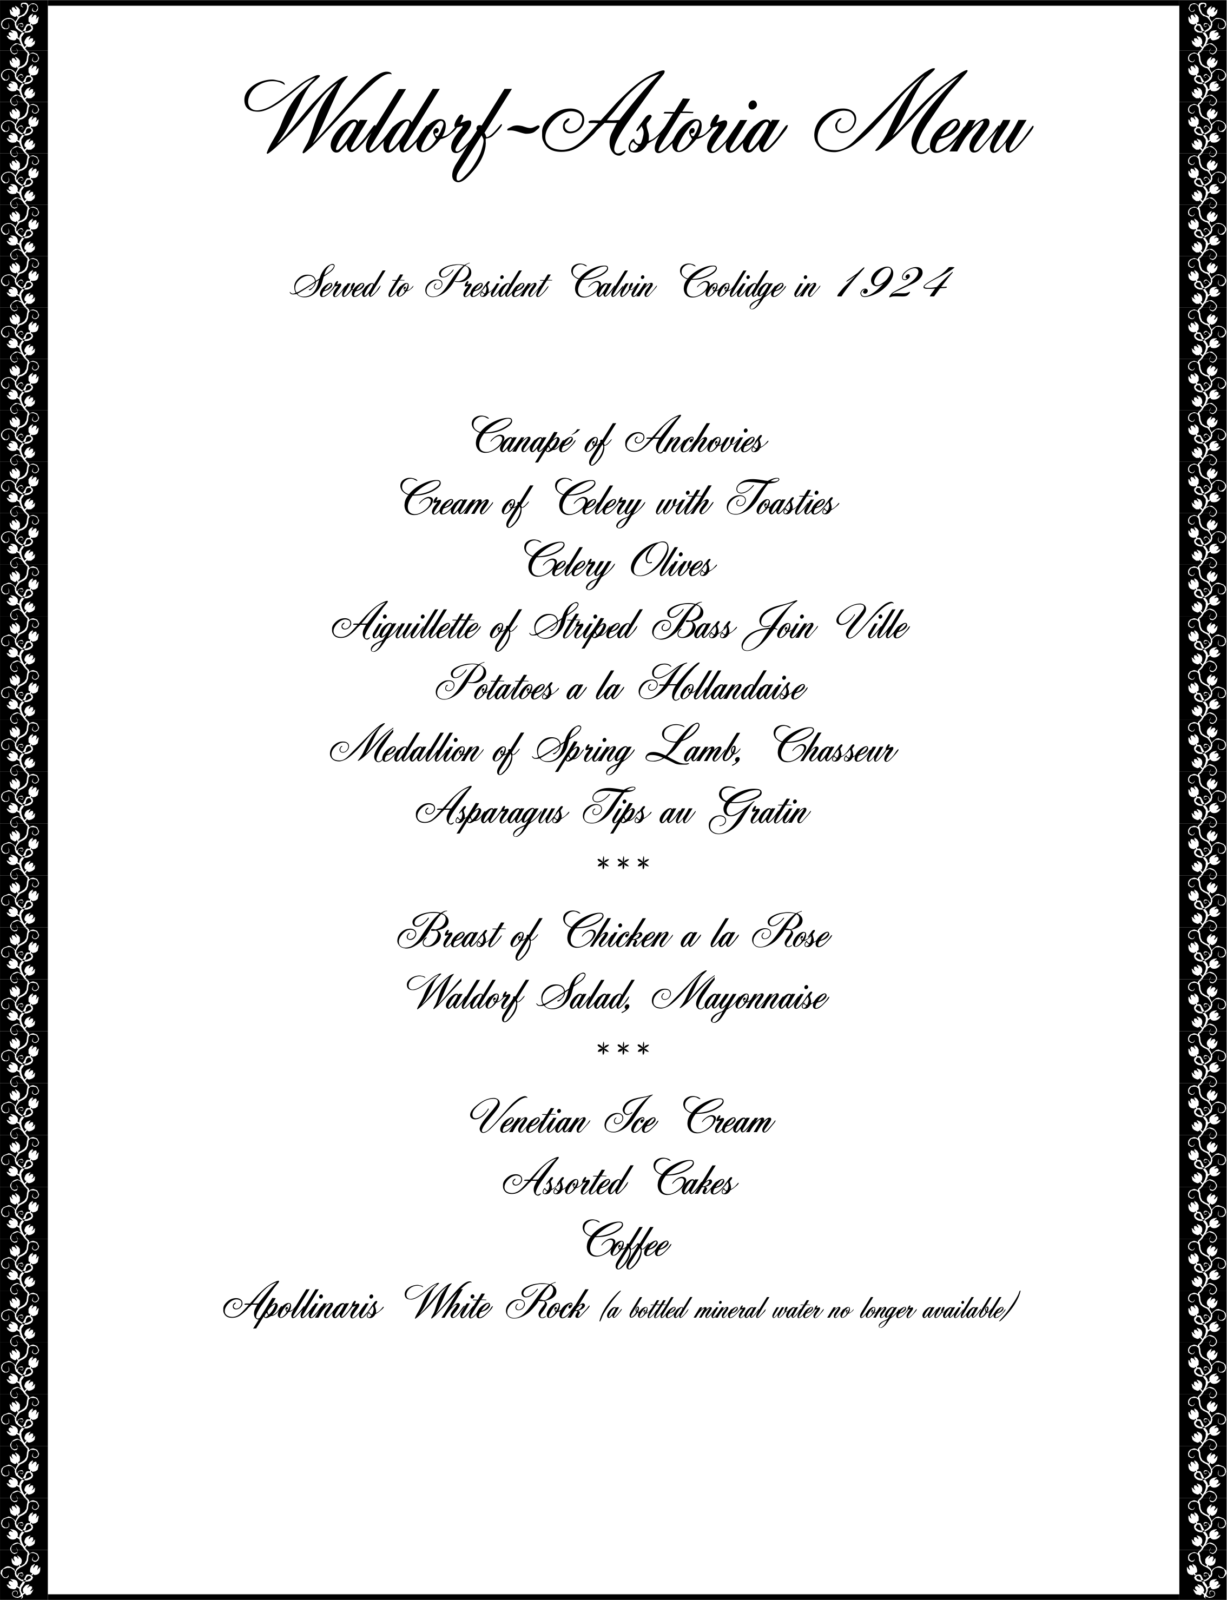 Waldorf Astoria 1920s food menu